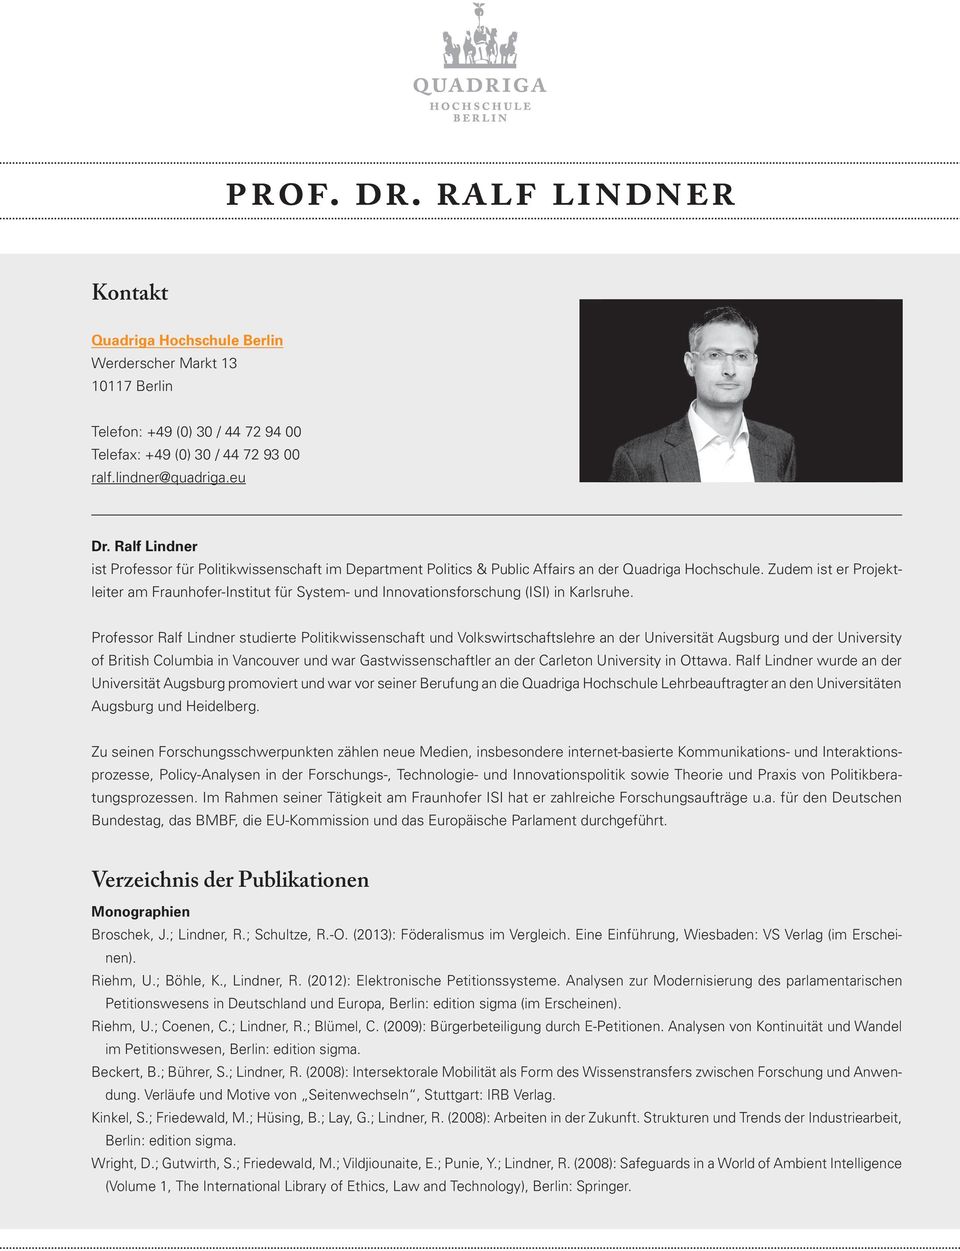 Zudem ist er Projektleiter am Fraunhofer-Institut für System- und Innovationsforschung (ISI) in Karlsruhe.